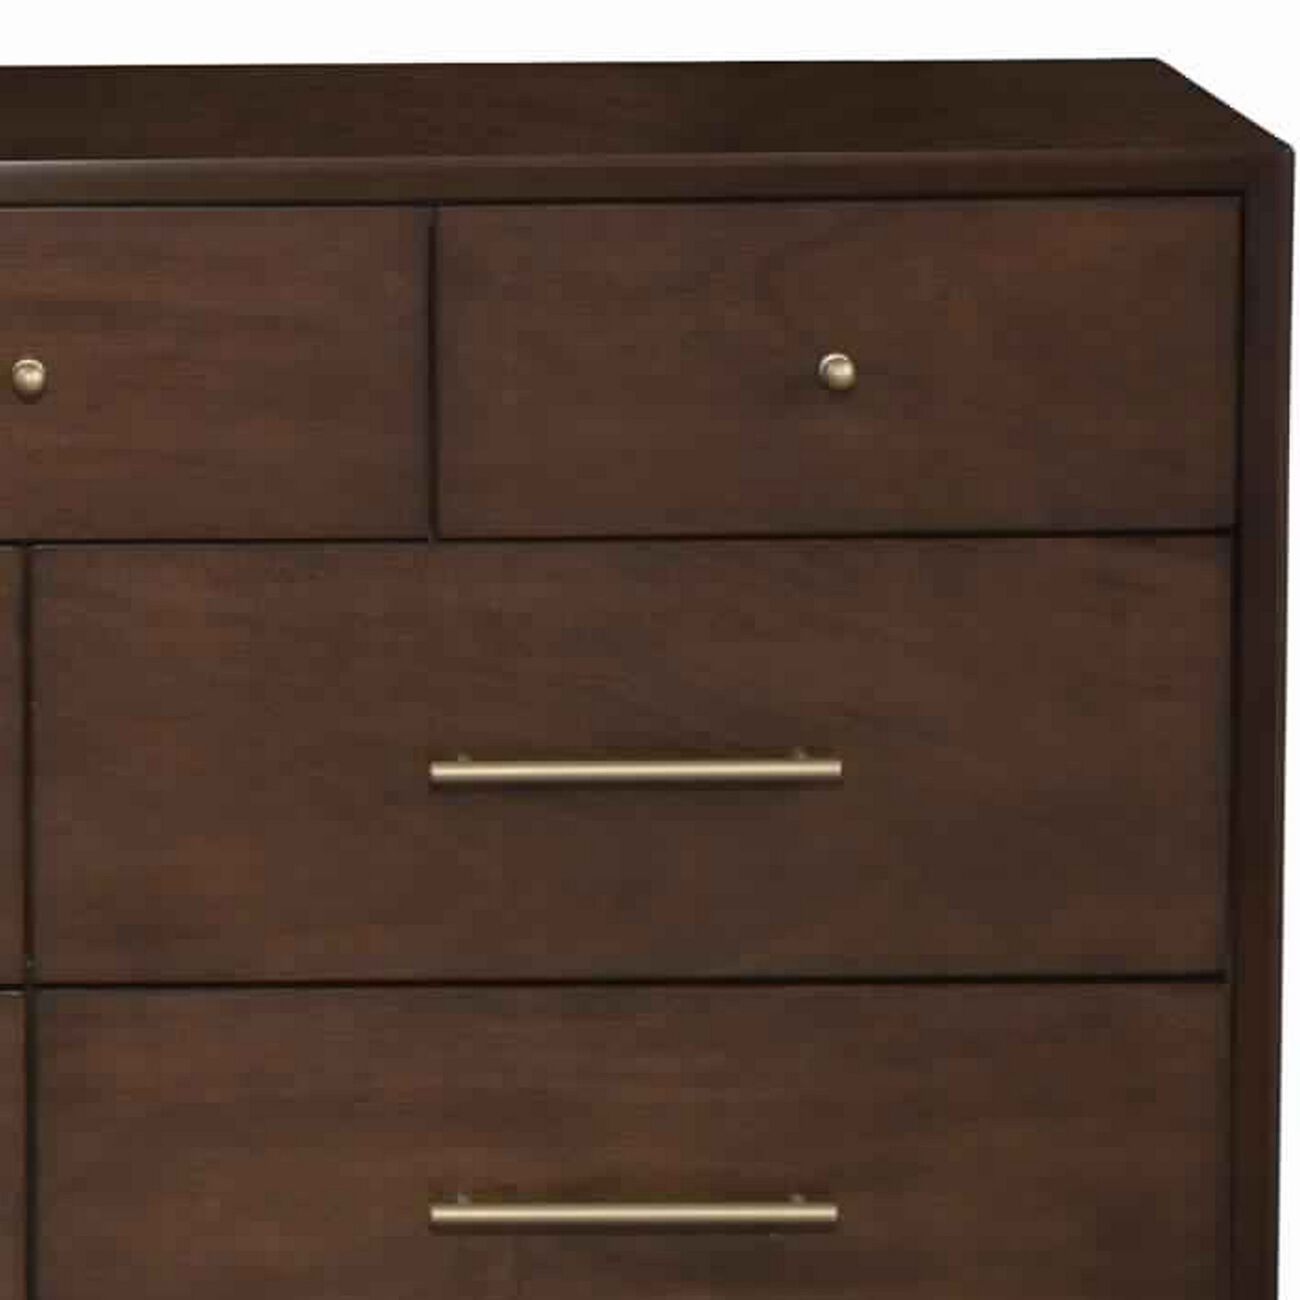 7 Drawer Mid Century Modern Wooden Dresser with Splayed Legs, Brown